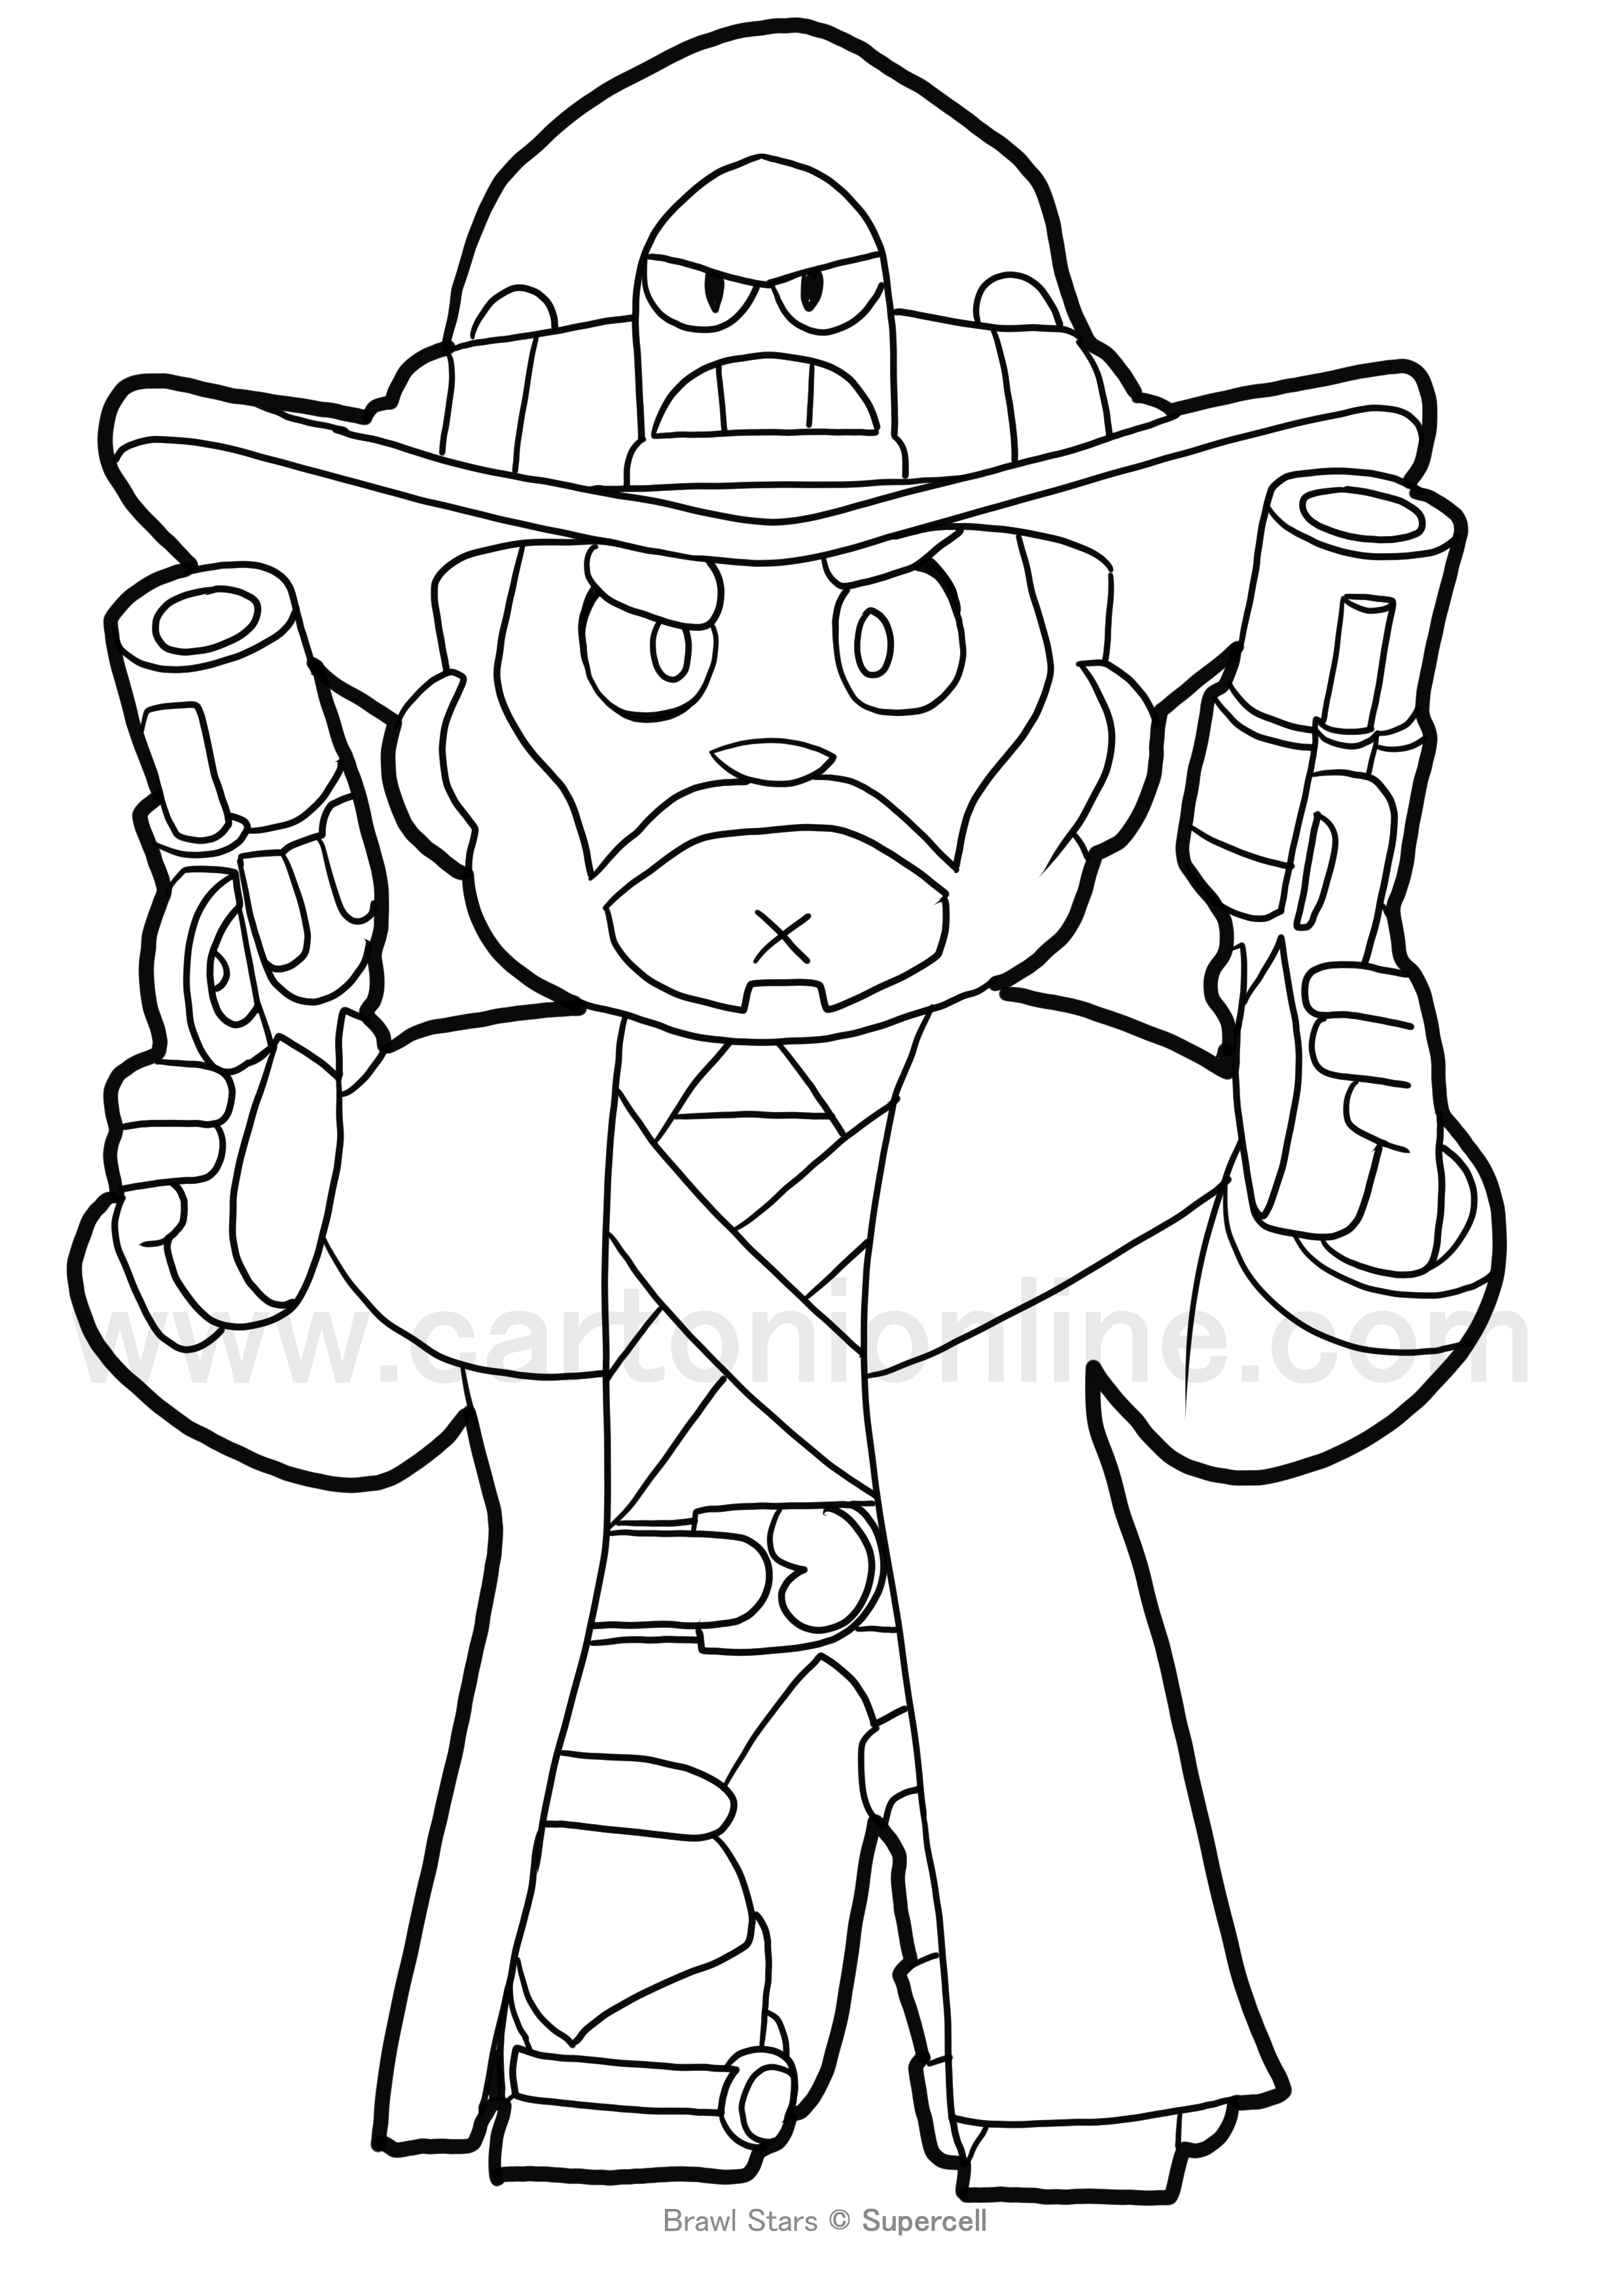 Desenho de Gunslinger Colt de Brawl Stars para imprimir e colorir